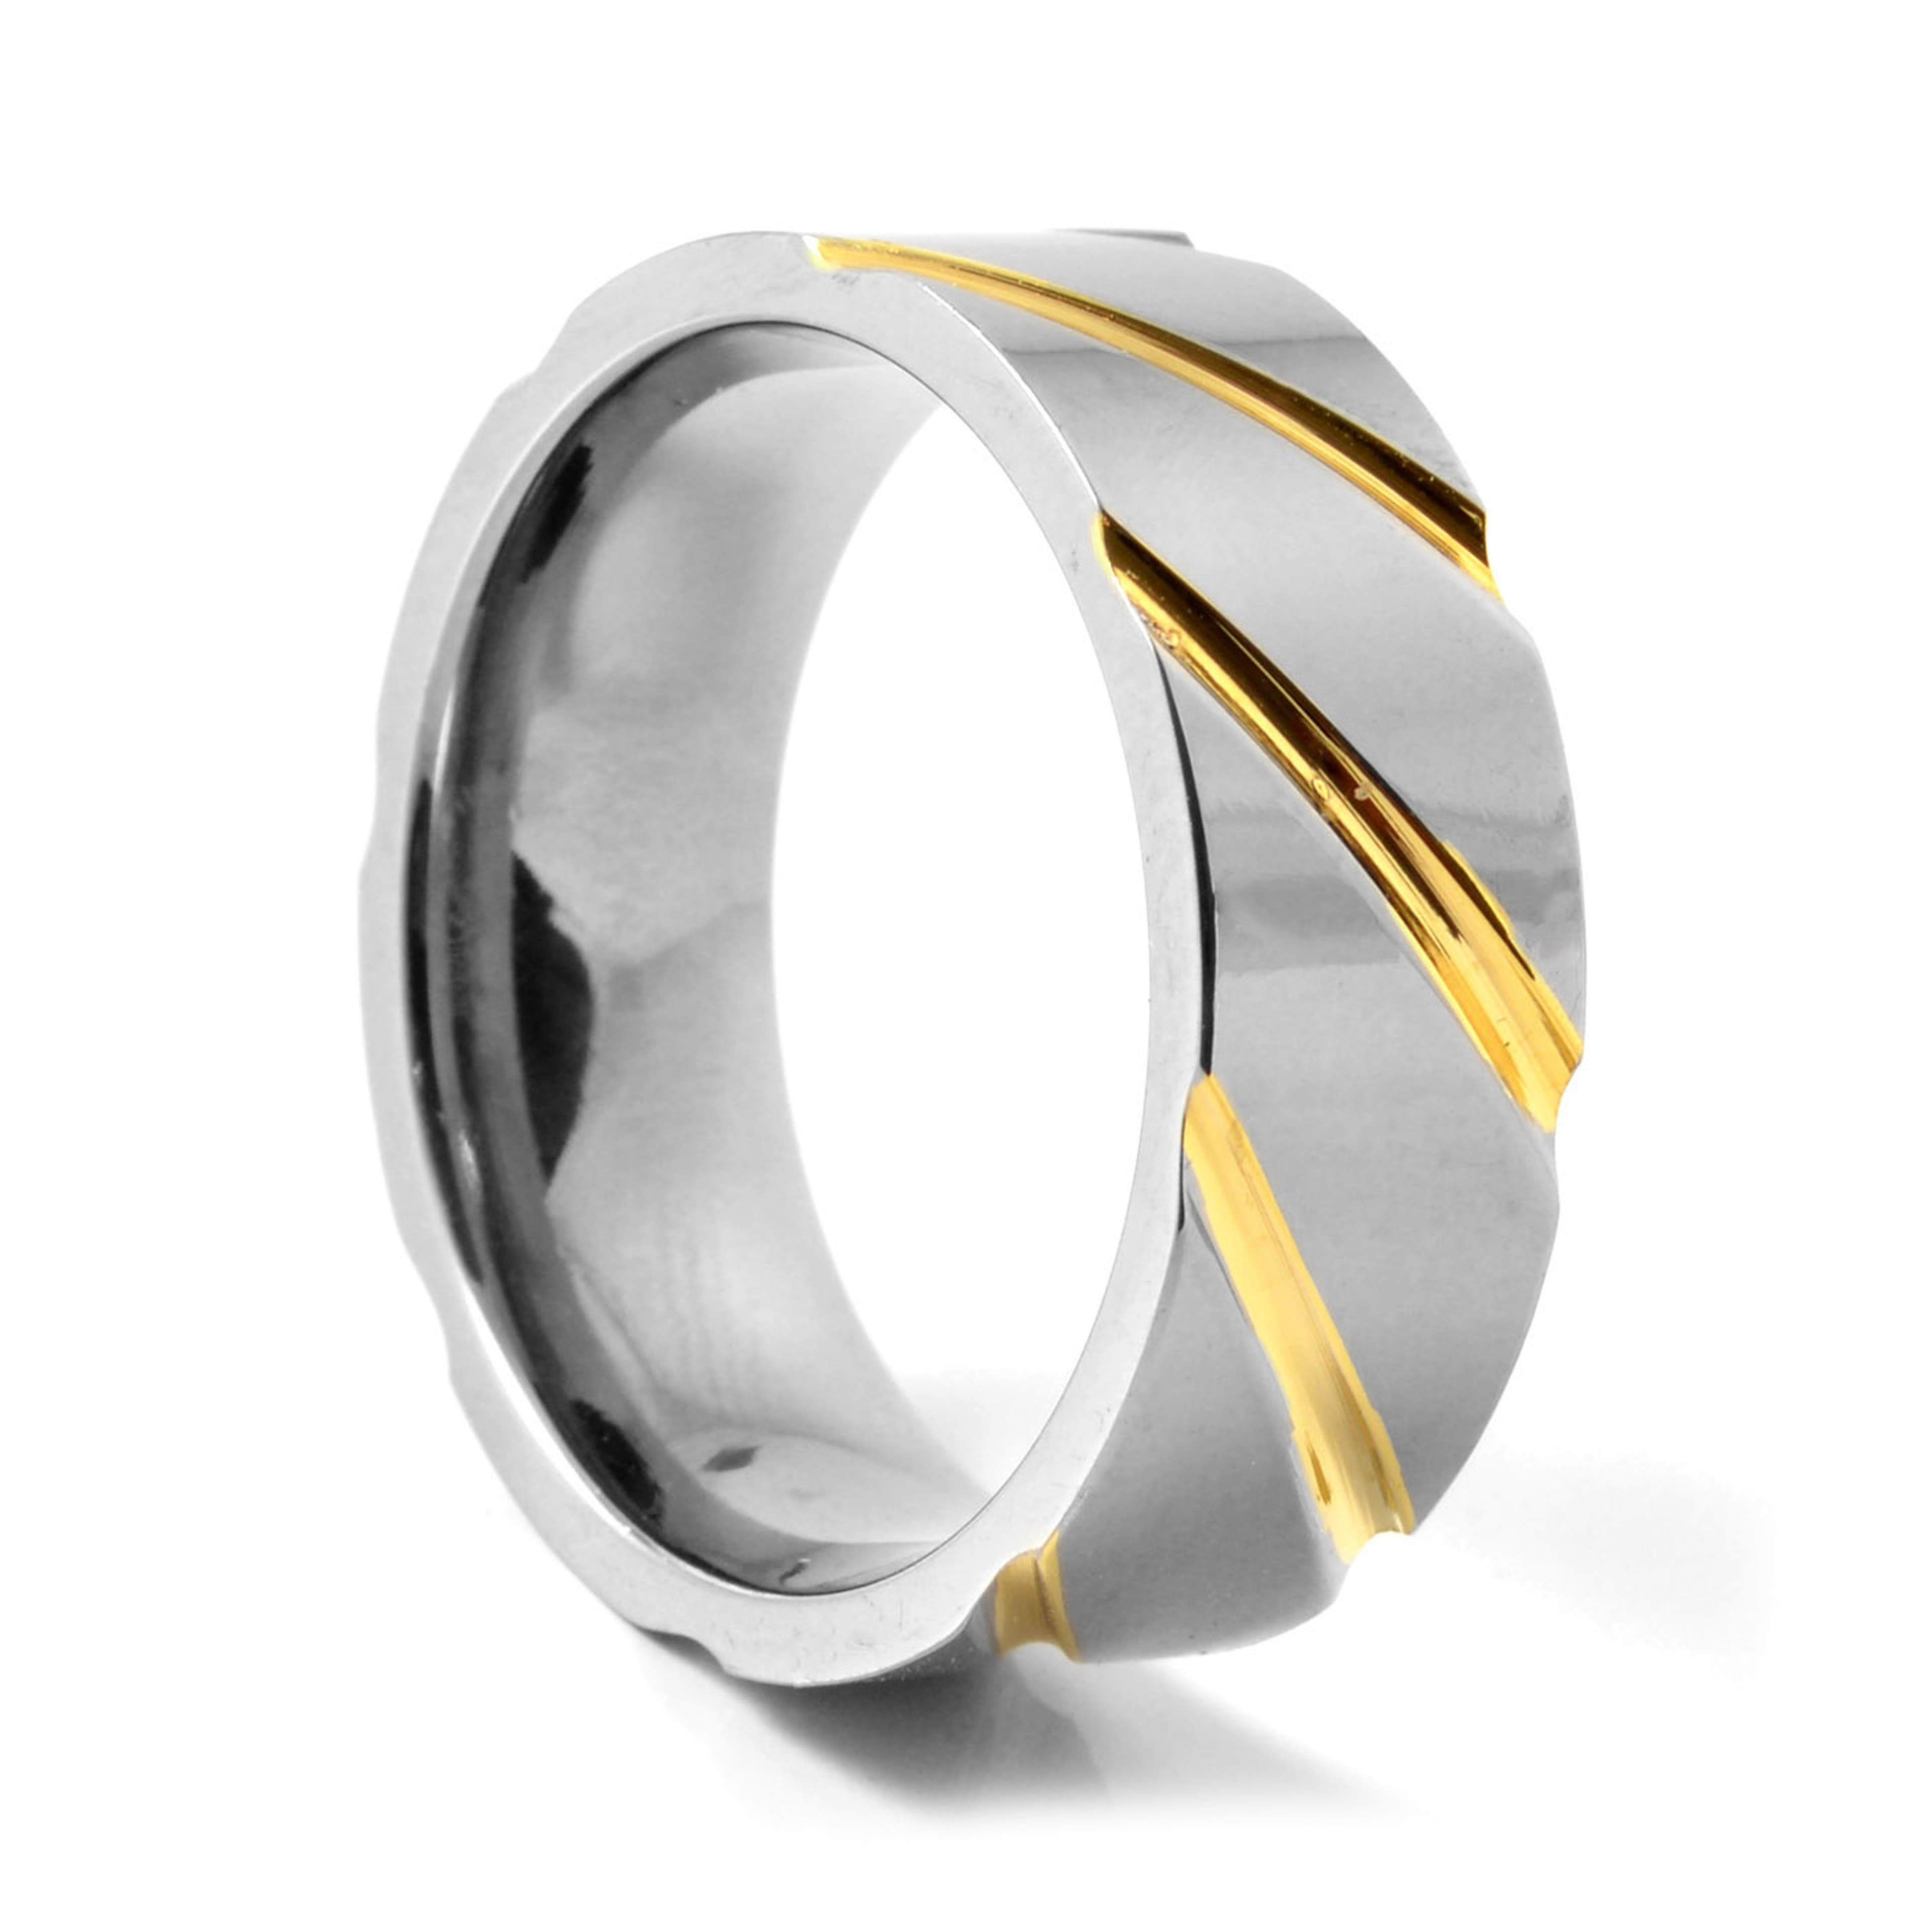 Wyjątkowy srebrzysto-złocisty tytanowy pierścionek